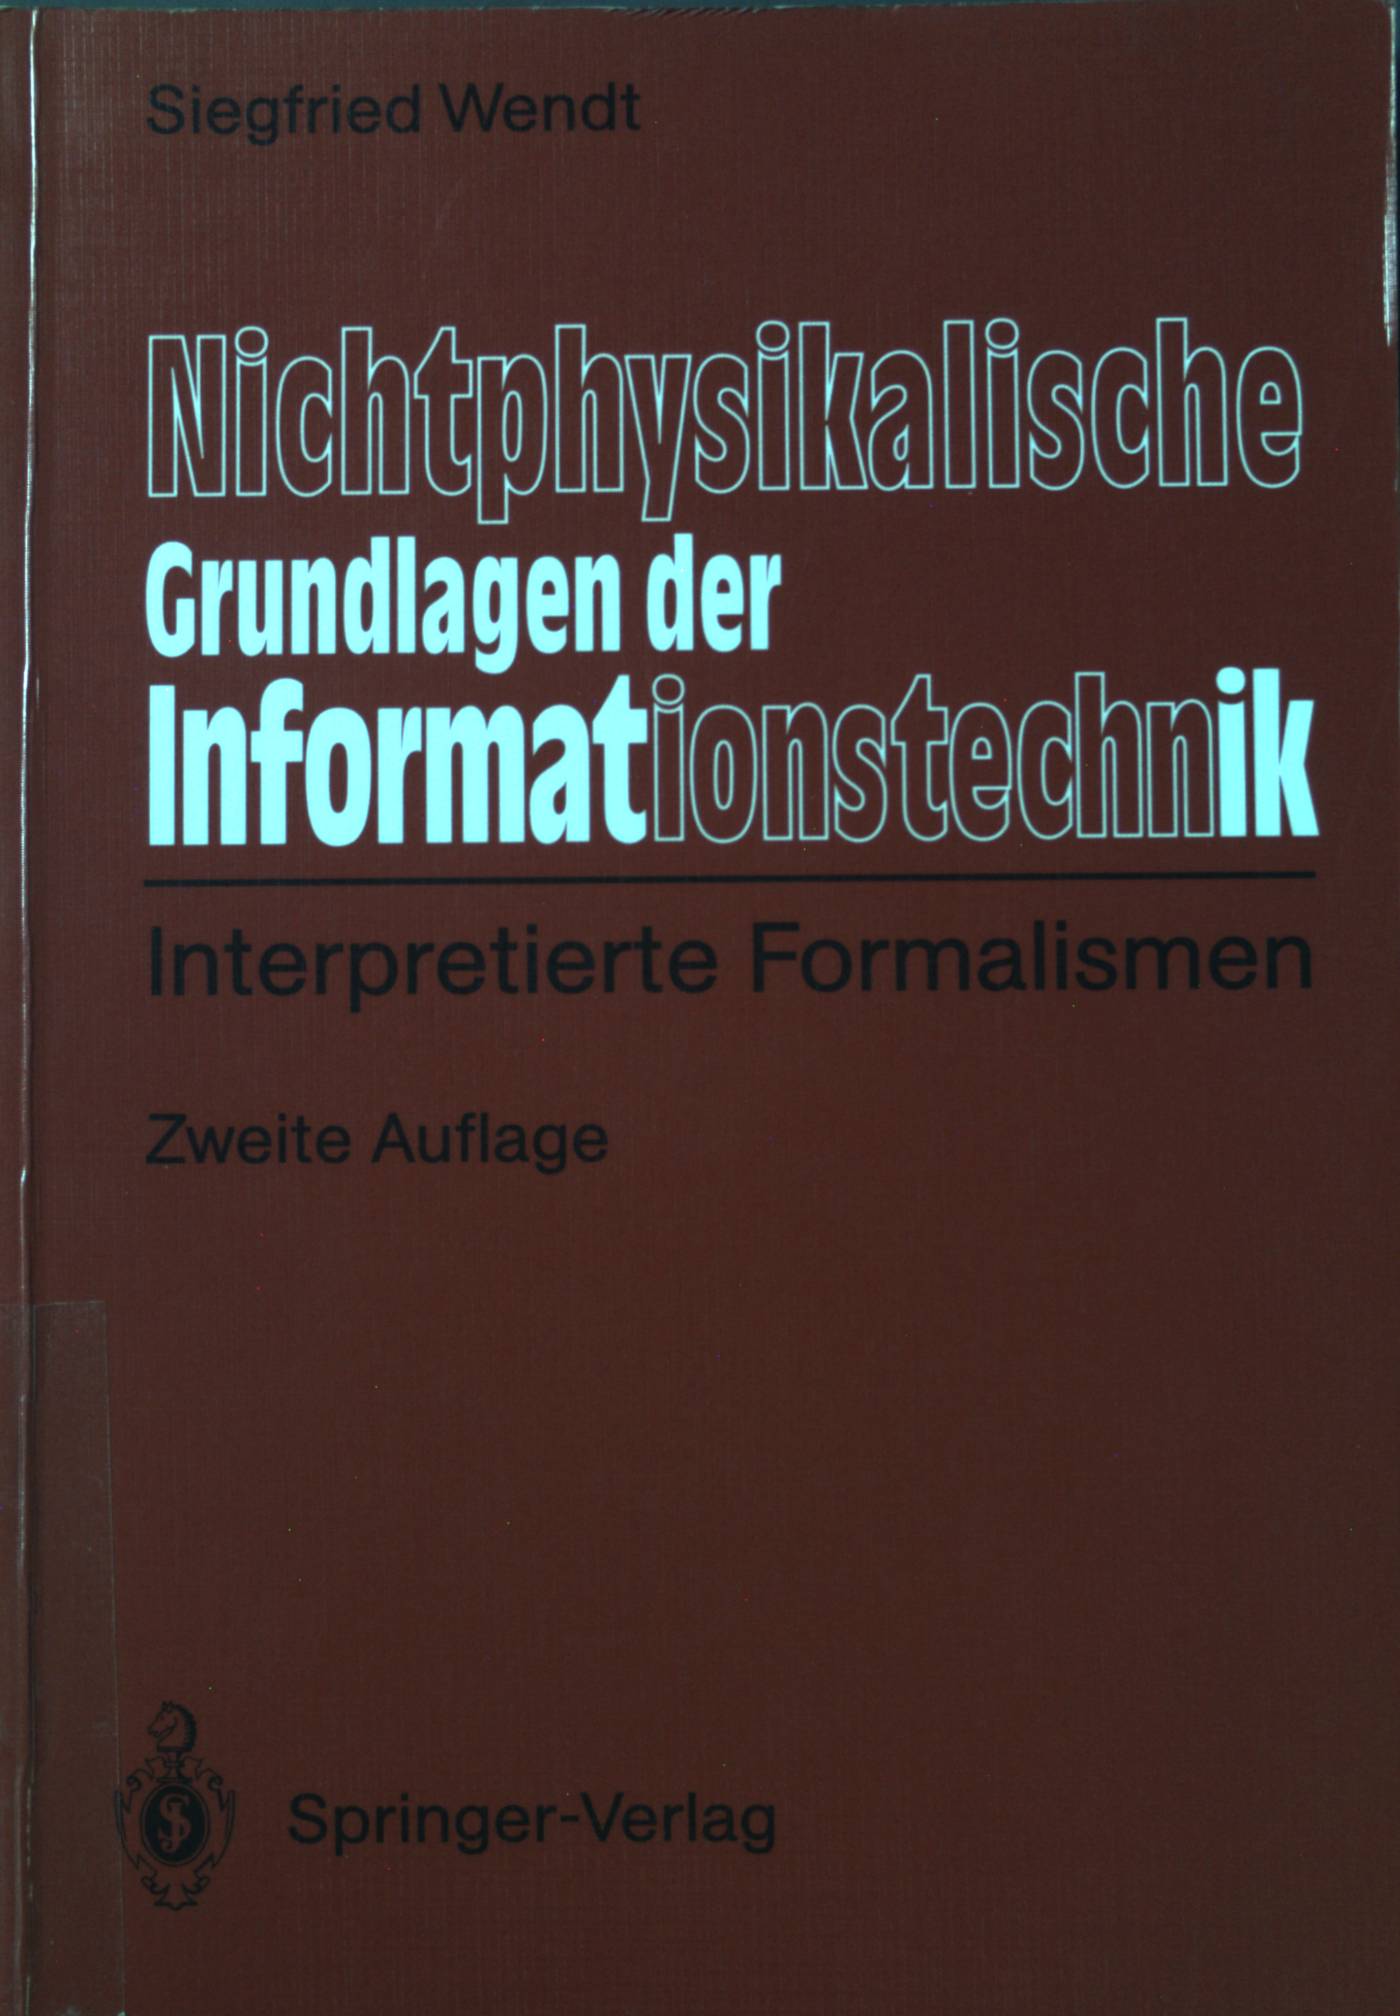 Nichtphysikalische Grundlagen der Informationstechnik : interpretierte Formalismen. - Wendt, Siegfried